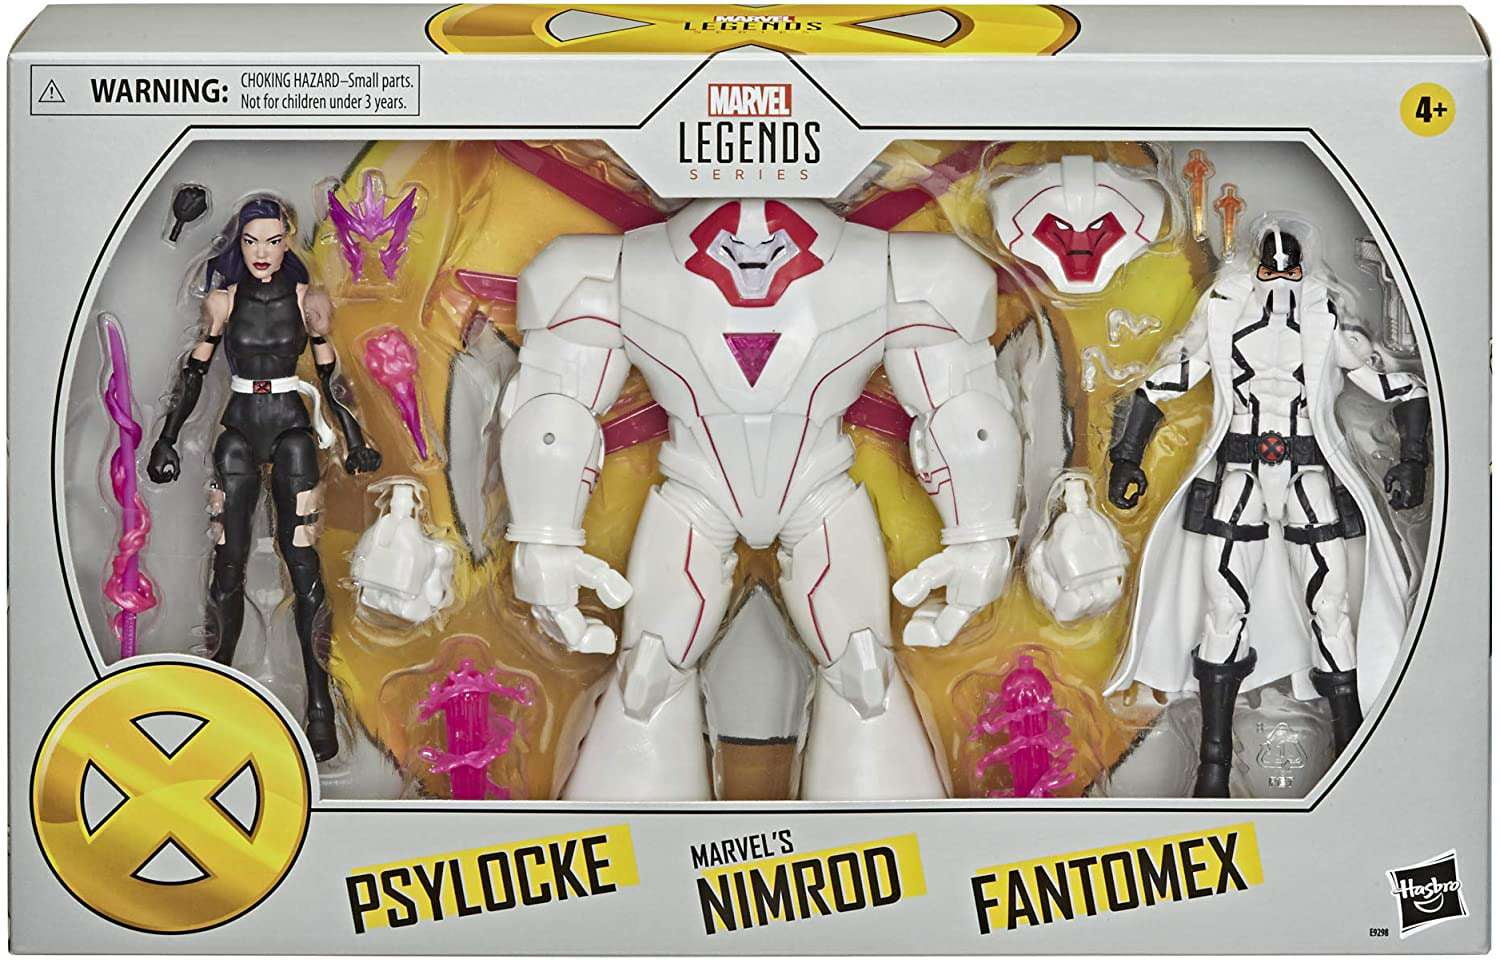 Marvel Legends Psylocke, Nimrod Fantomex Action Figure Walmart.com